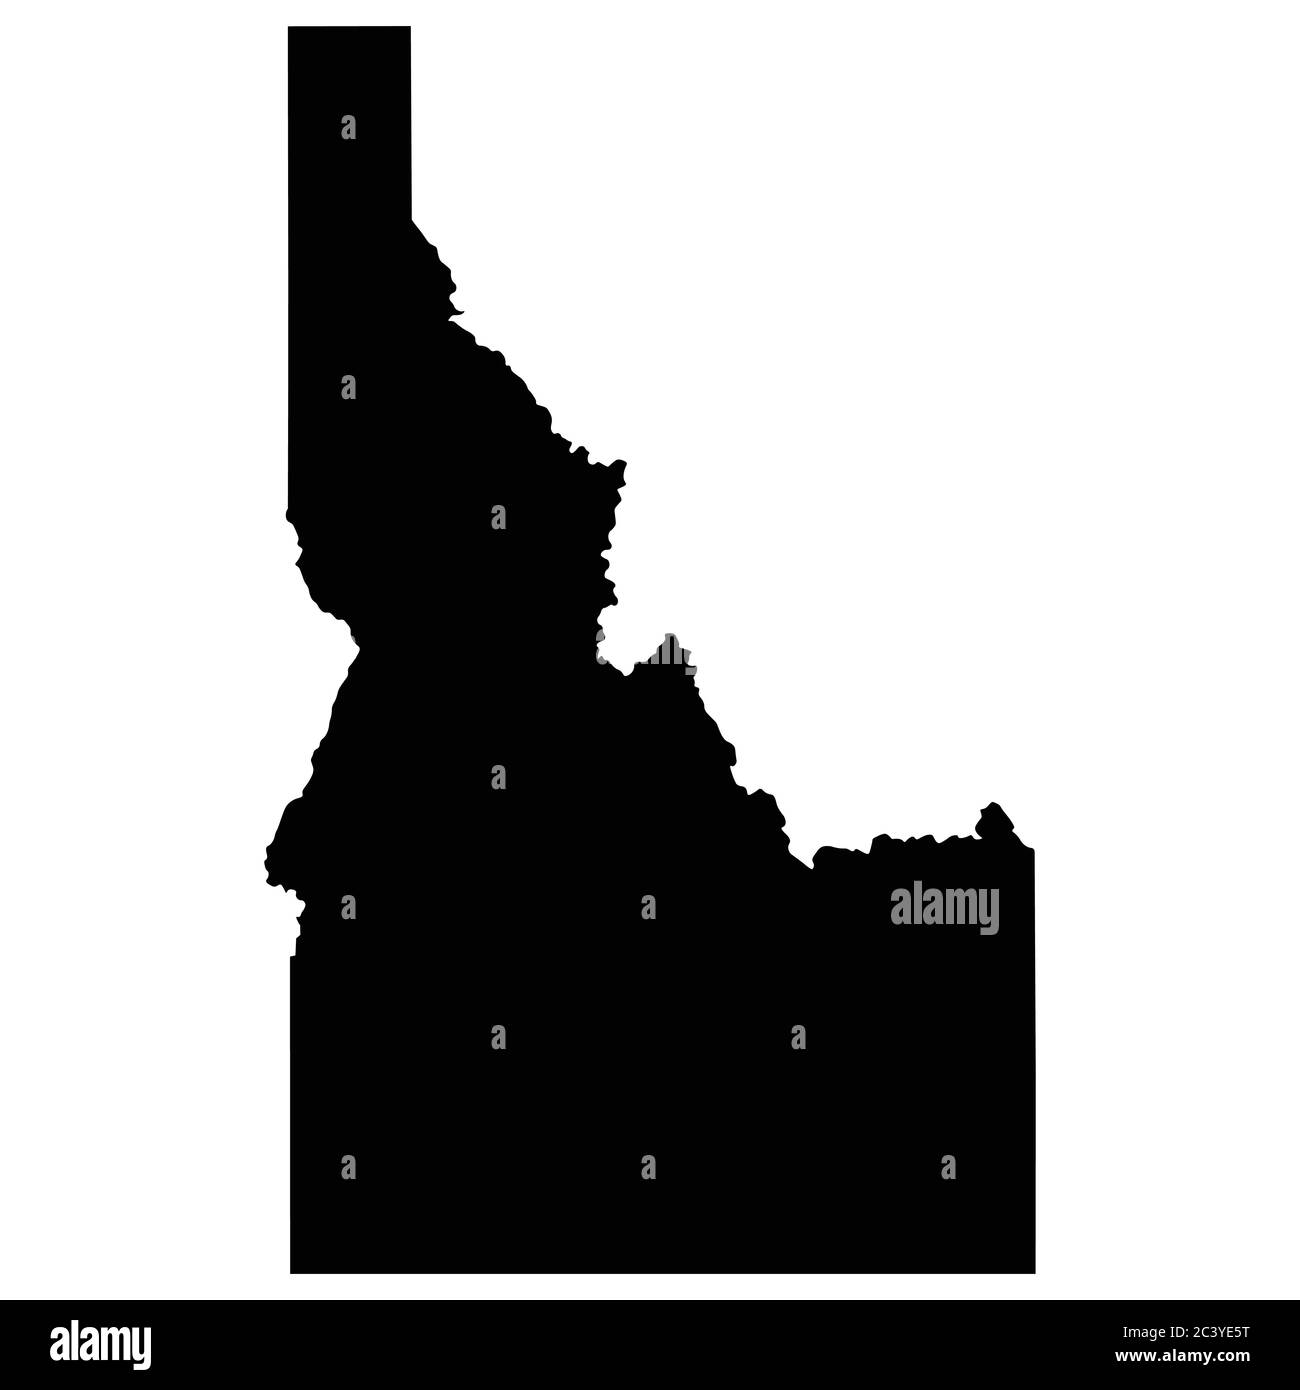 Idaho ID-Zustandskarten. Schwarze Silhouette einfarbige Karte isoliert auf weißem Hintergrund. EPS-Vektor Stock Vektor